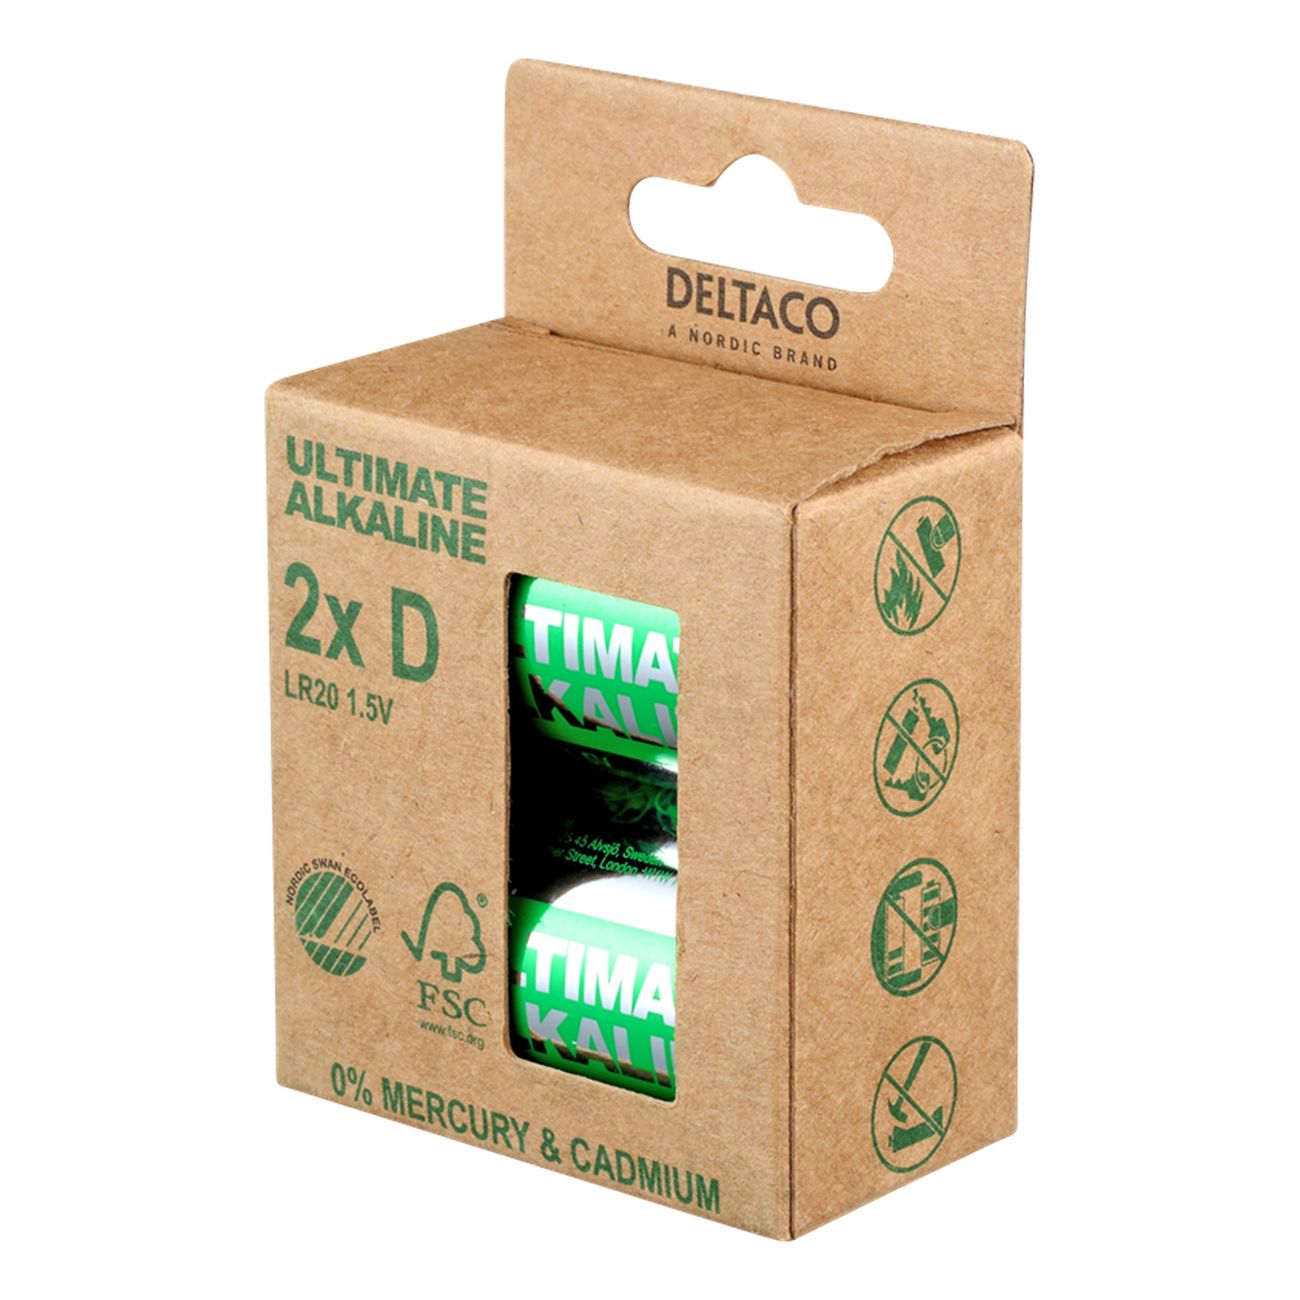 deltaco-ultimate-alkaline-batterier-91181-7